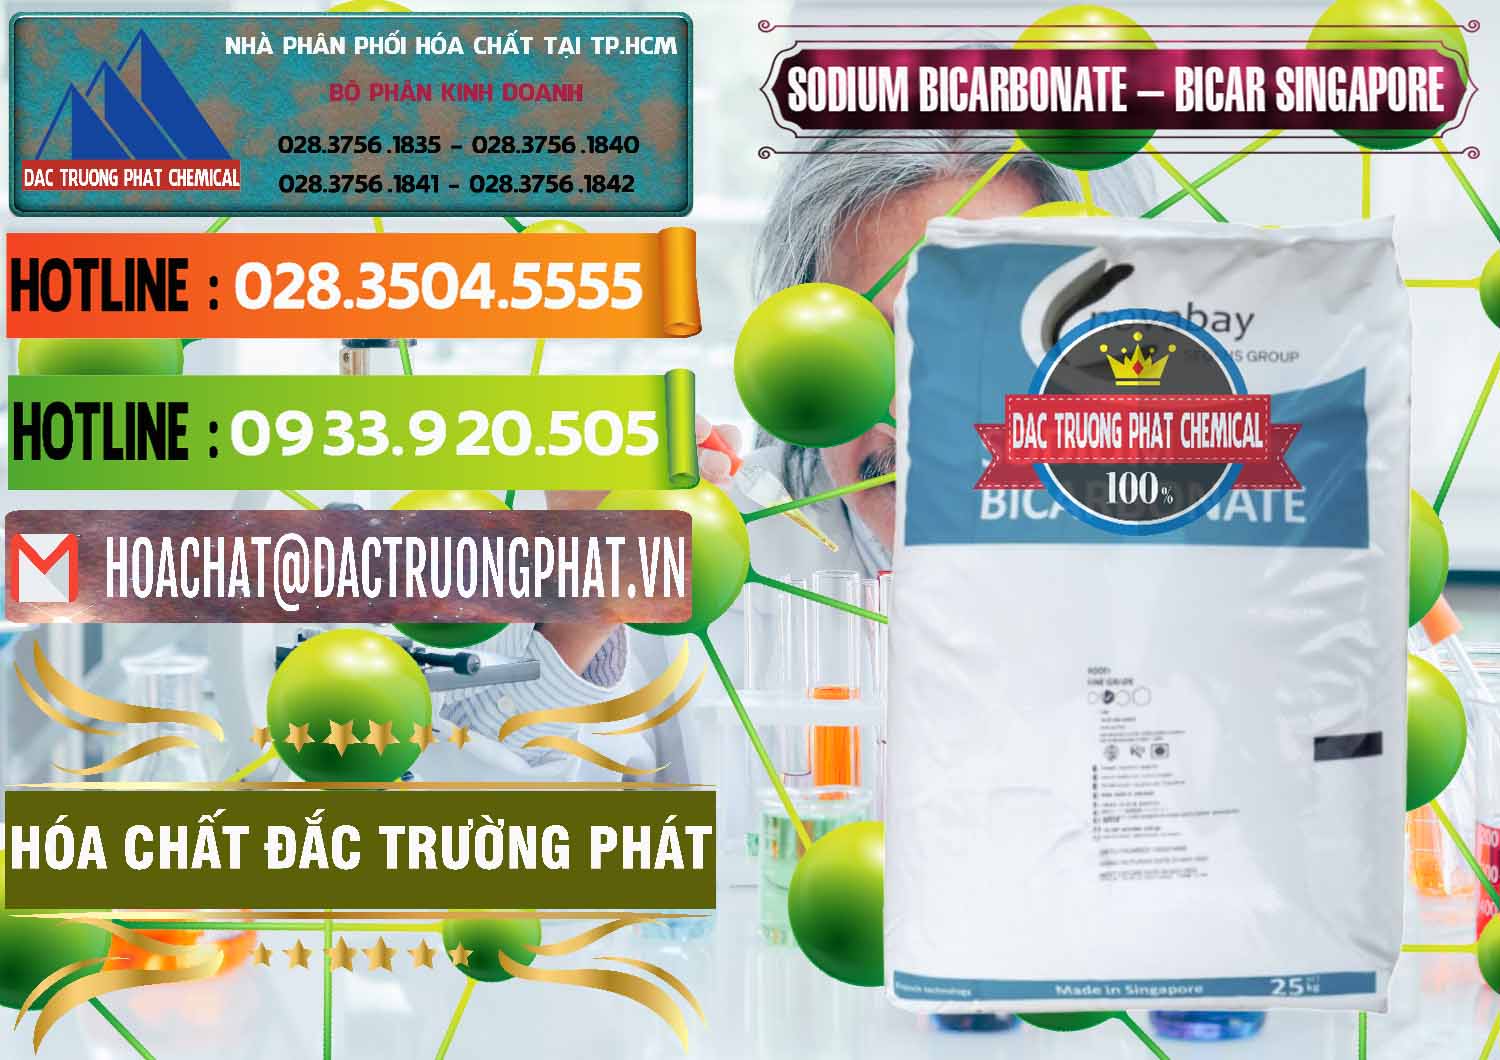 Chuyên phân phối & bán Sodium Bicarbonate – Bicar NaHCO3 Singapore - 0411 - Nơi chuyên phân phối và nhập khẩu hóa chất tại TP.HCM - cungcaphoachat.com.vn